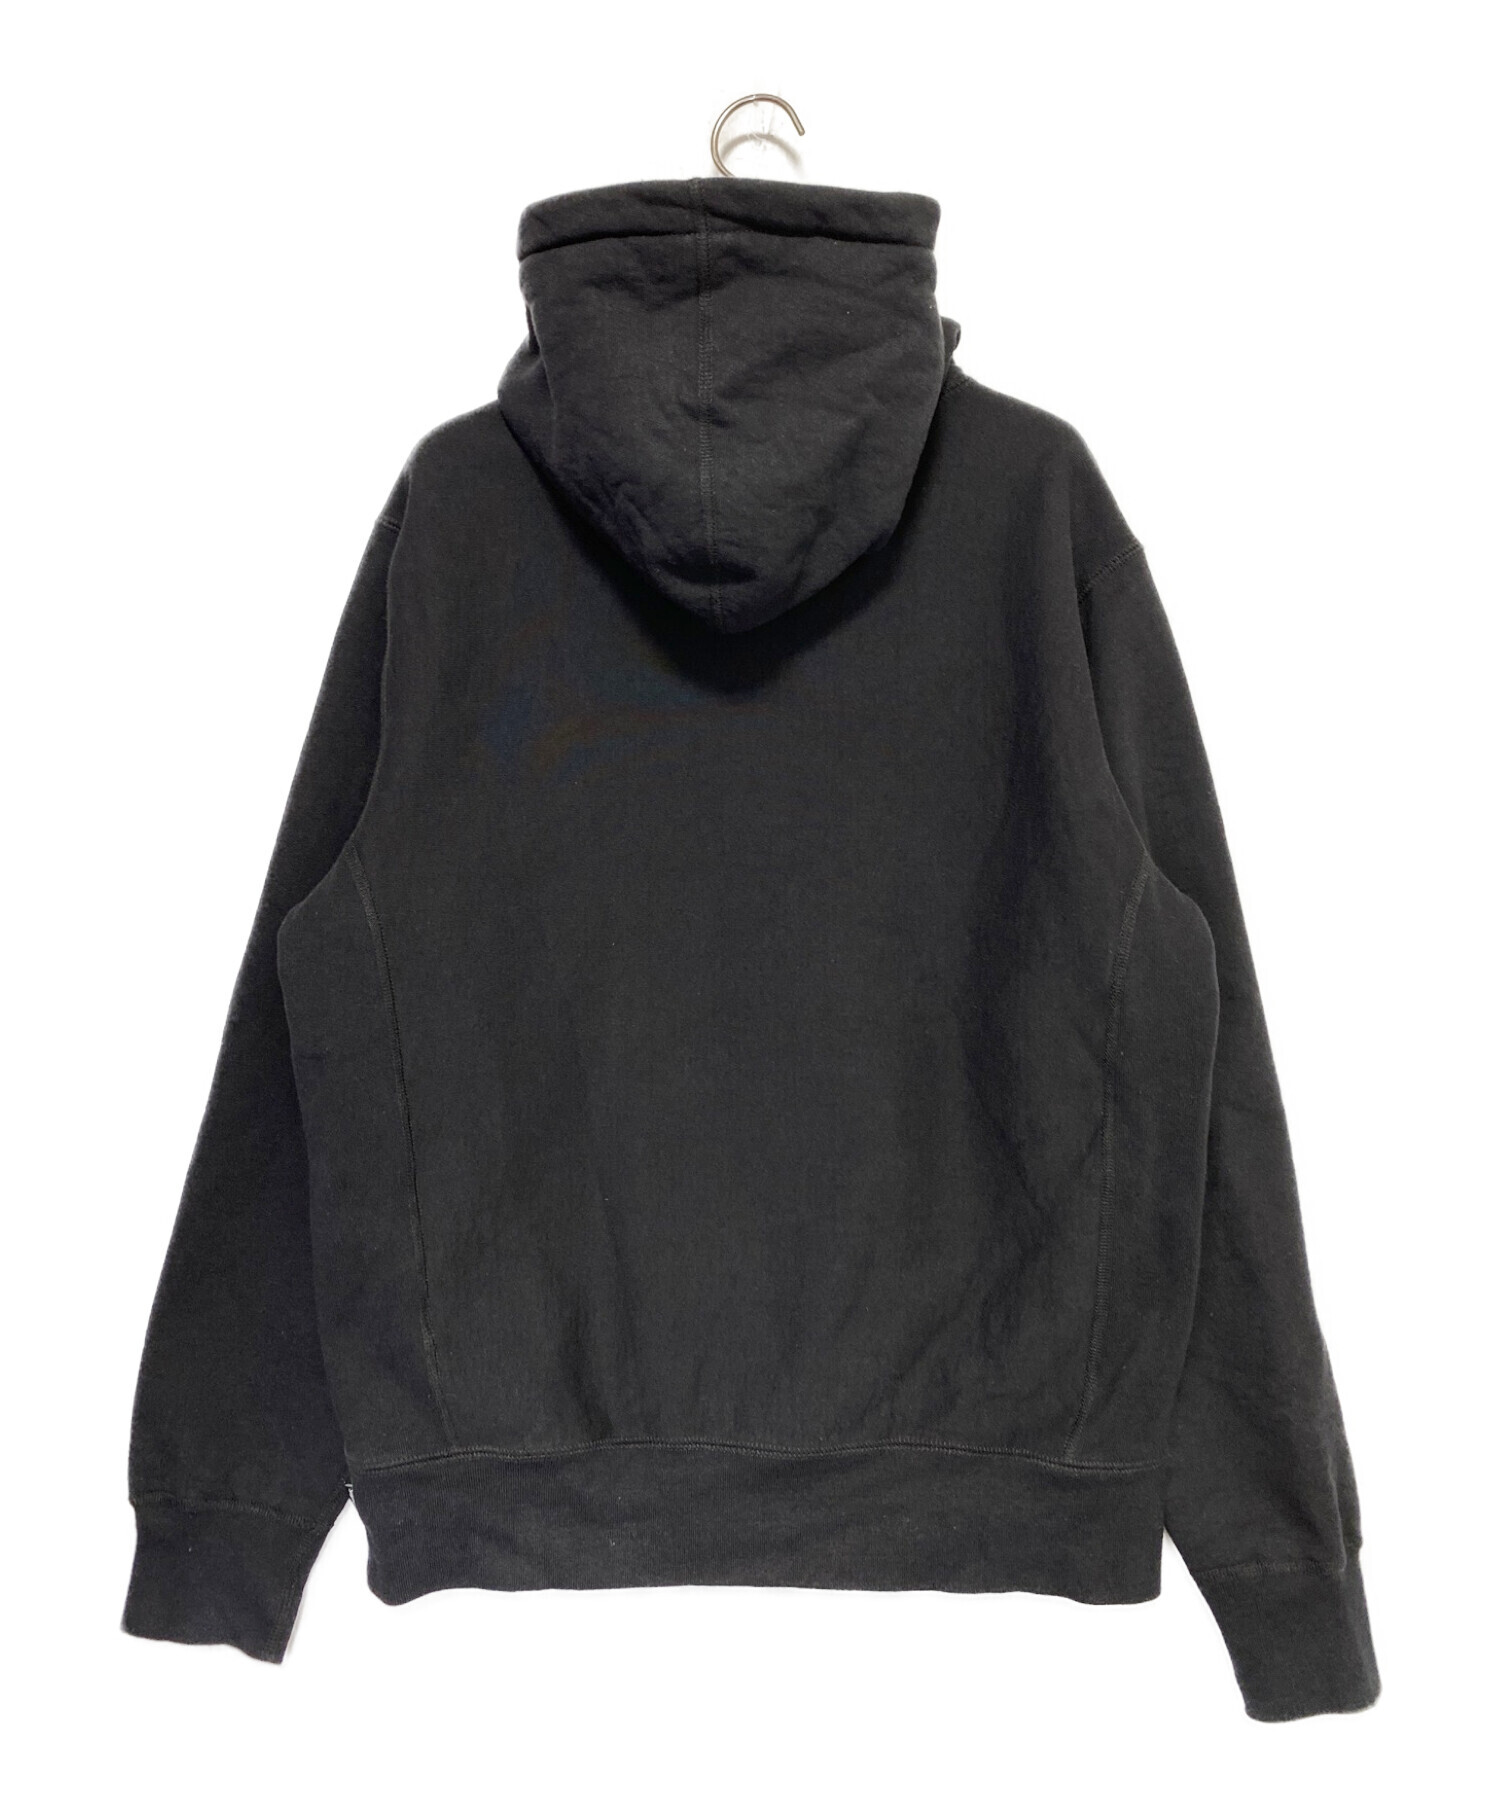 黒 M supreme arc logo hooded sweatshirt2017年3月4日発売の